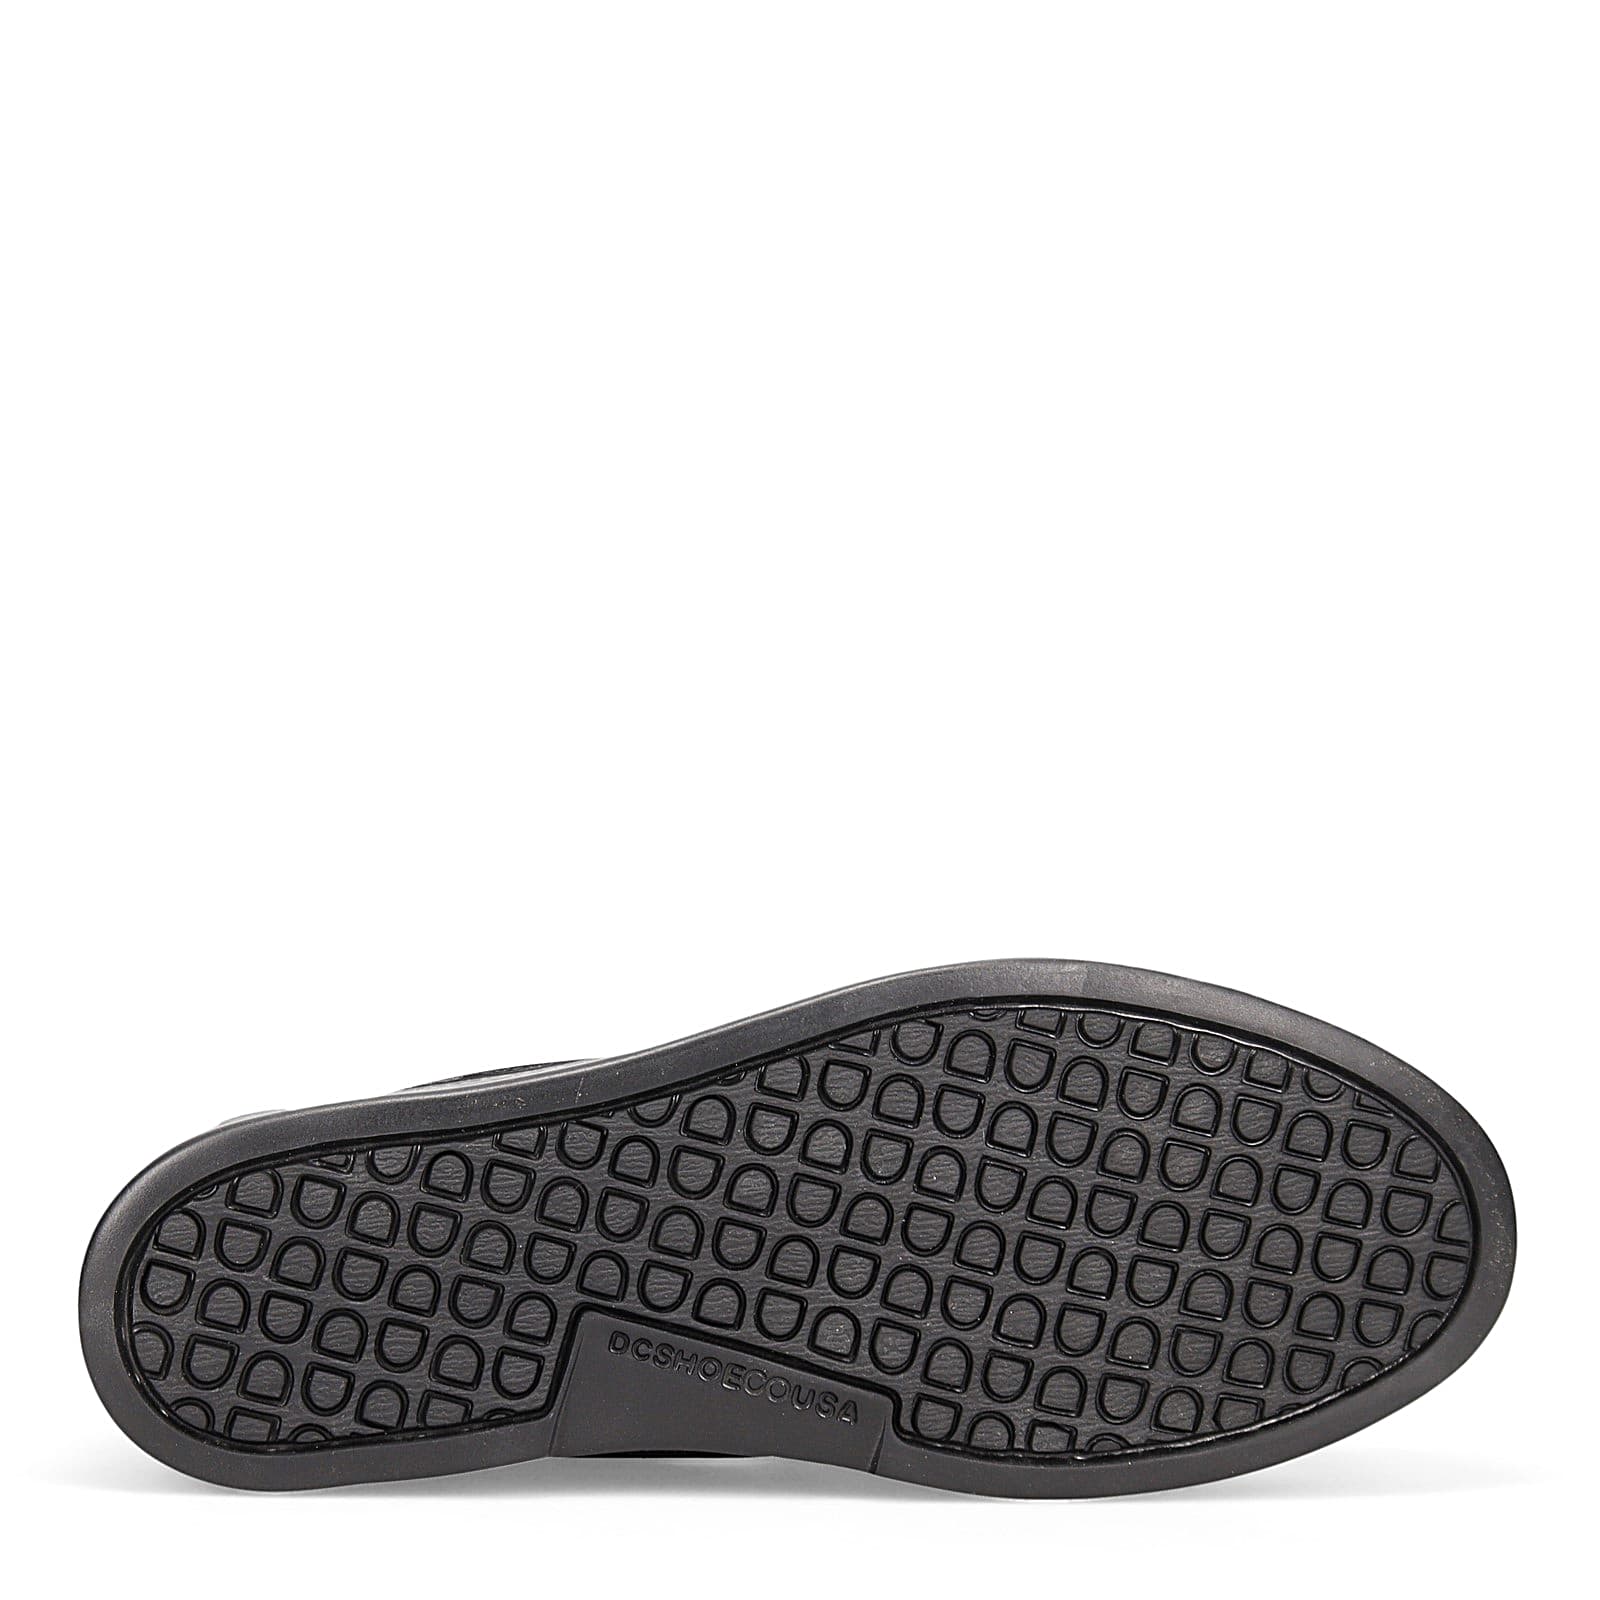 DC Shoes Slip Resistant Athletic Shoes for Men | Mercari